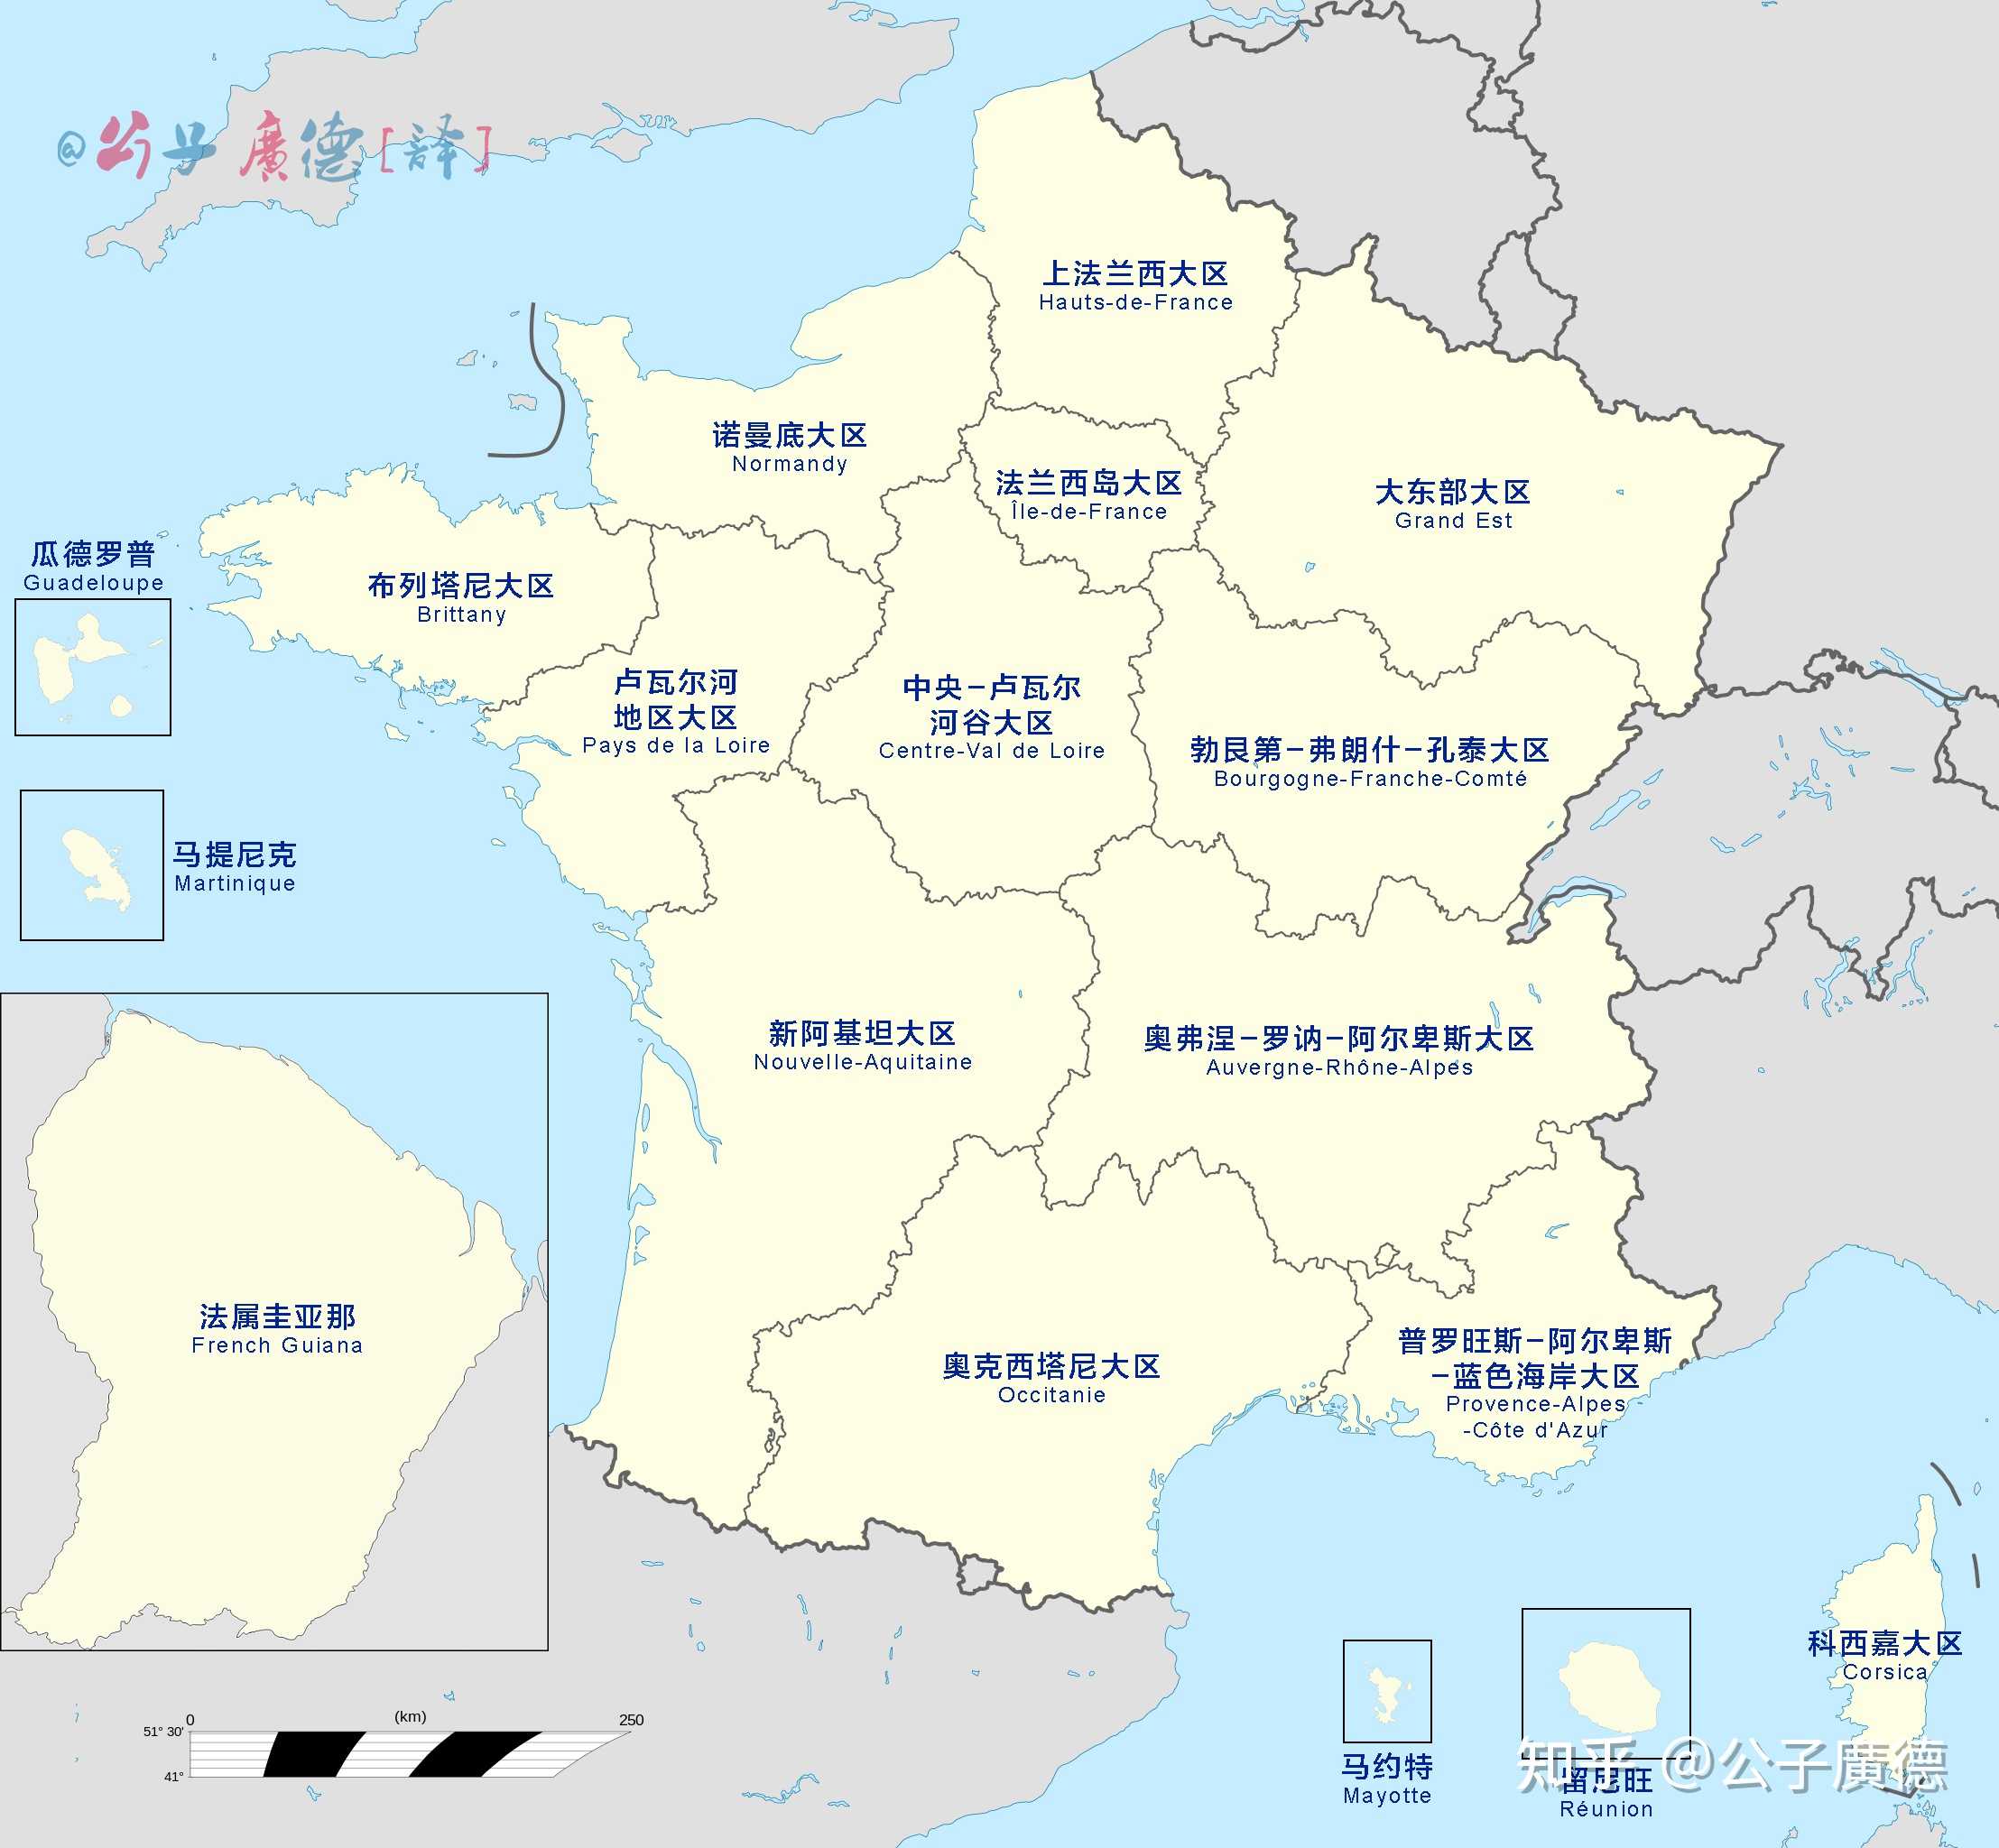 公子广德 的想法: [译图]法国的18个一级行政区划图